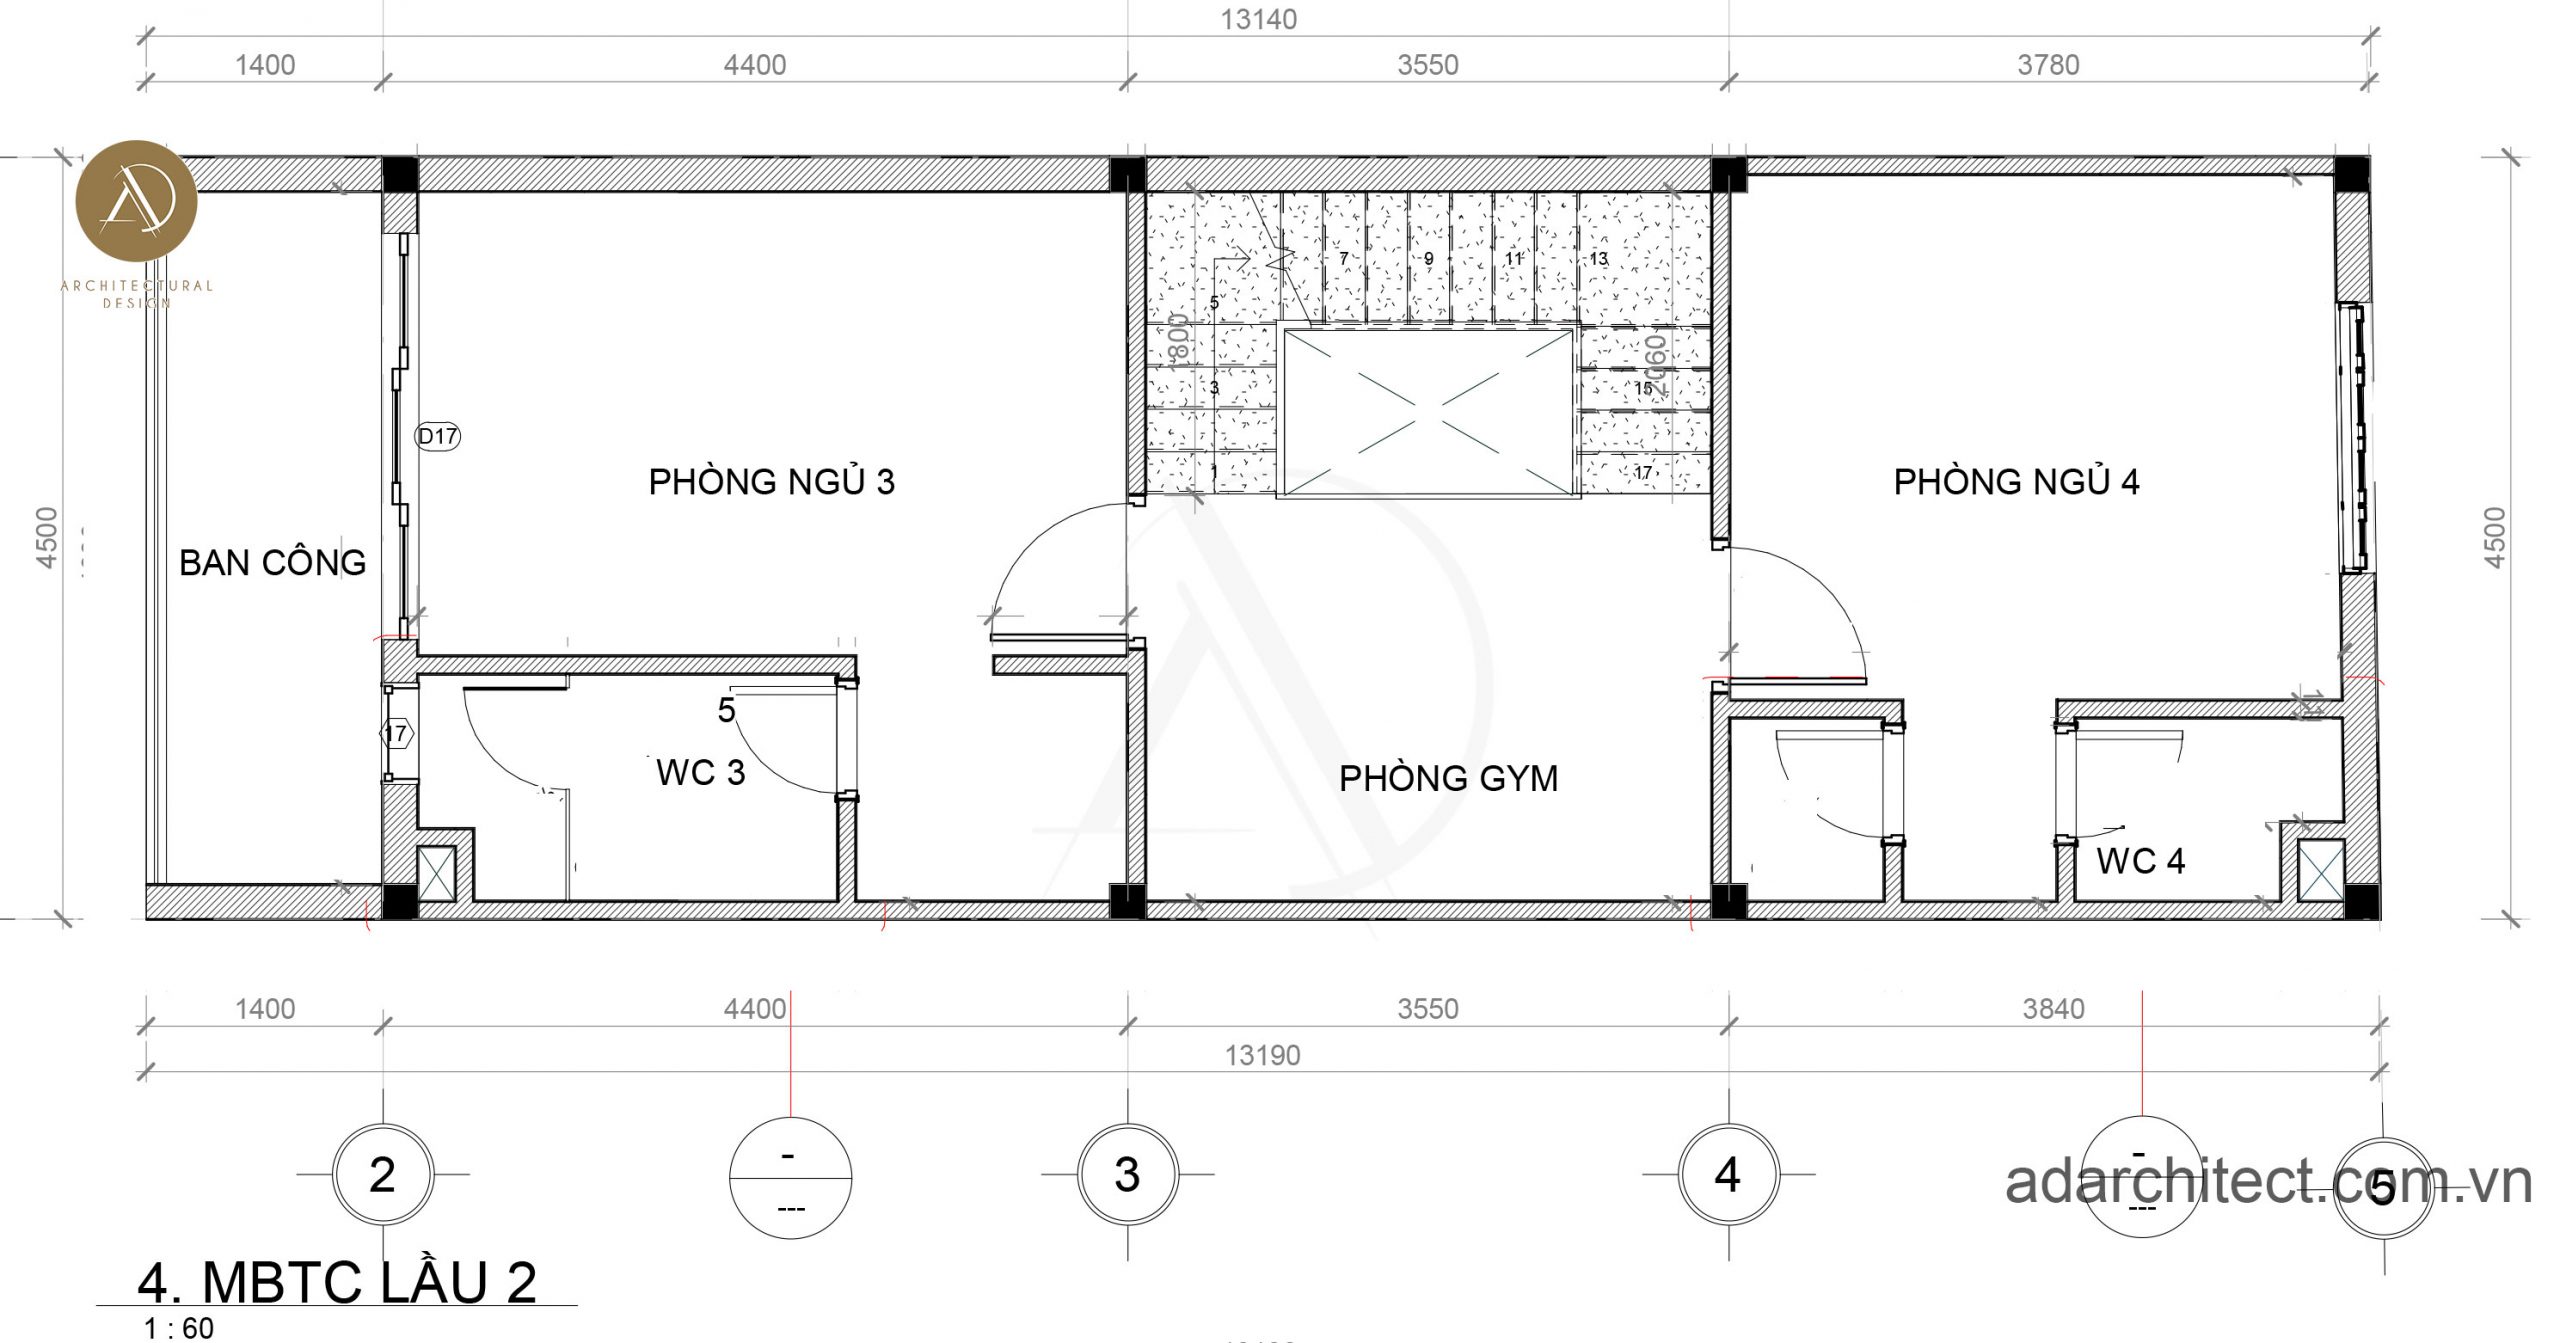 thiết kế nhà 4 phòng ngủ: mặt bằng lầu 2 có 2 phòng ngủ